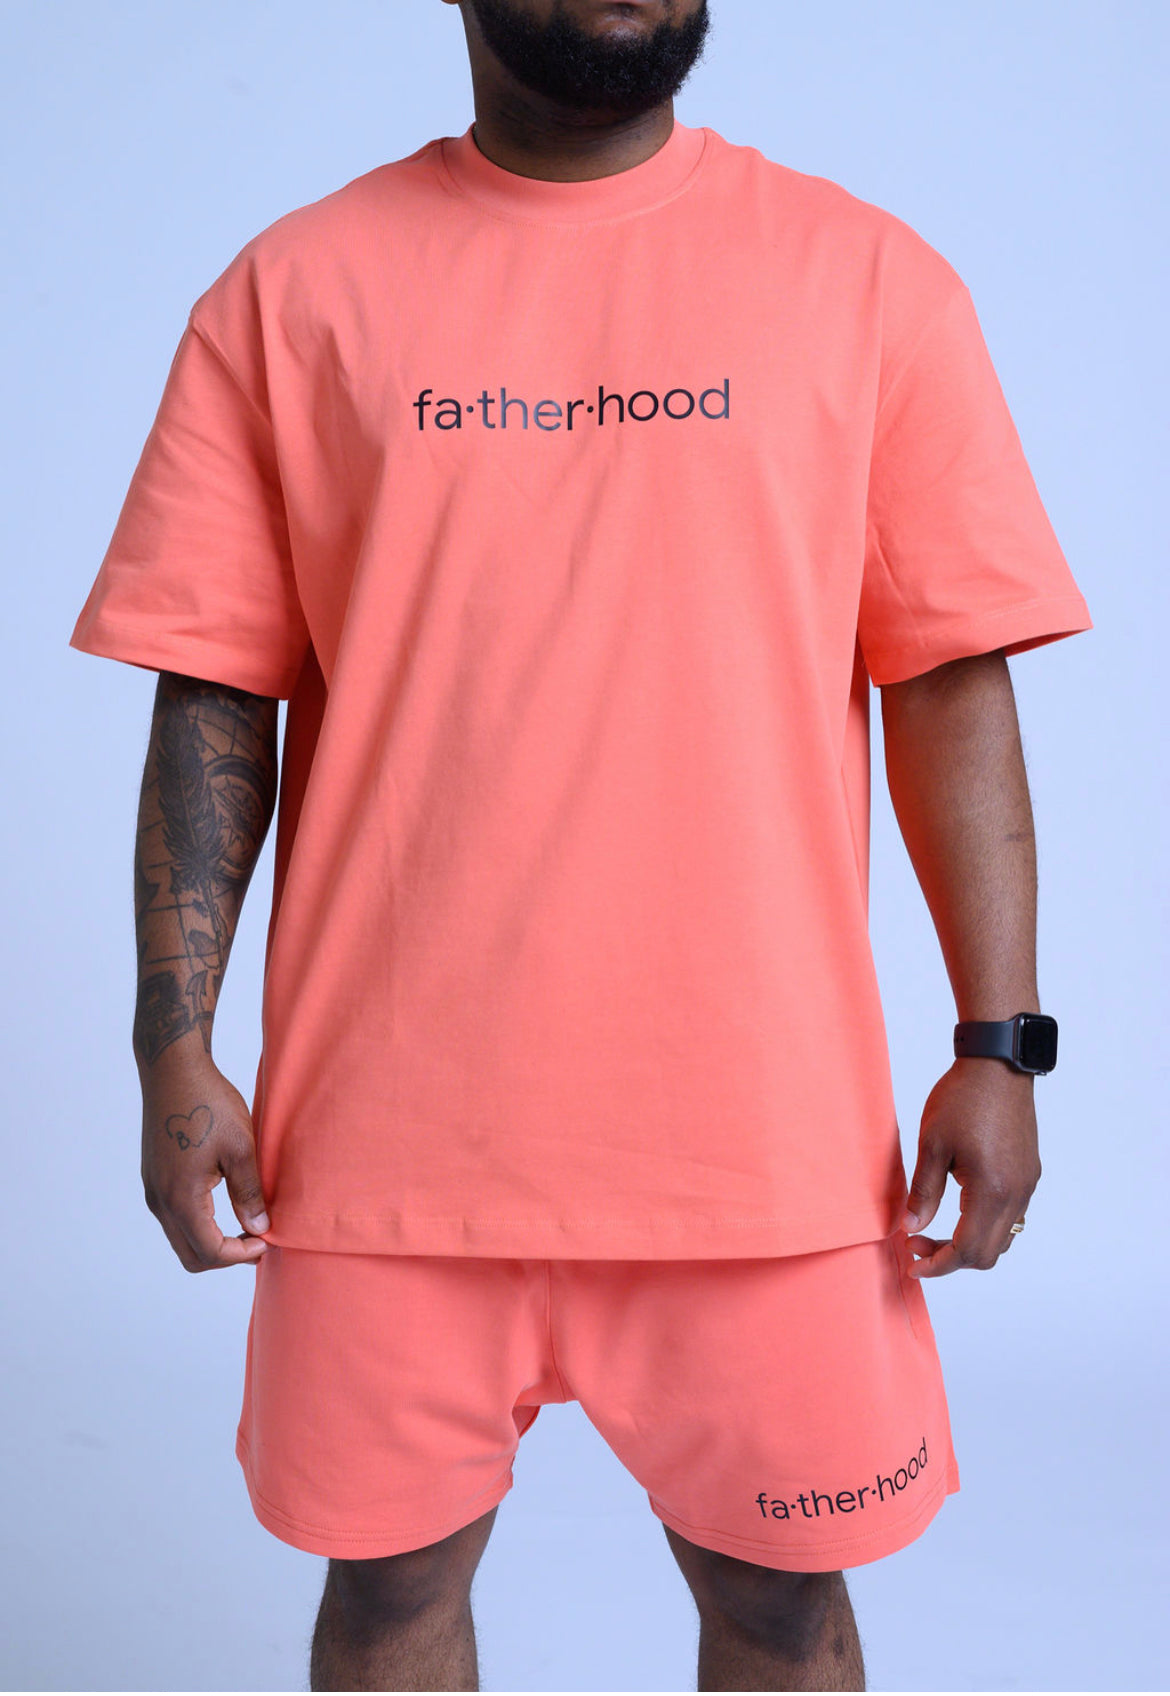 Fatherhood T-shirt/Short Only